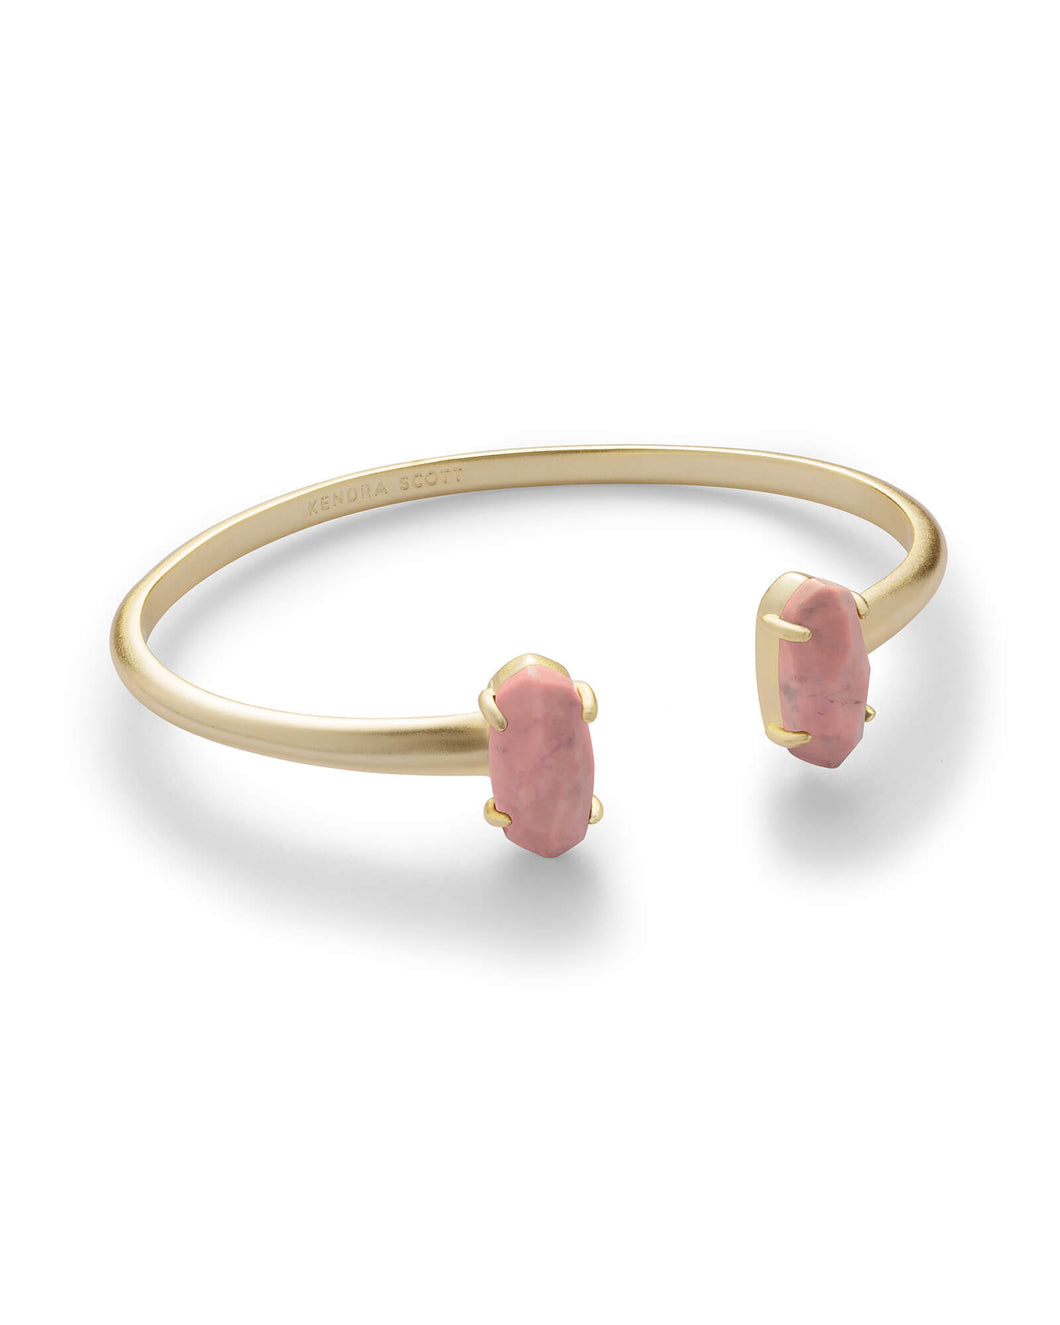 Edie Gold Cuff Bracelet In Pink Rhodonite